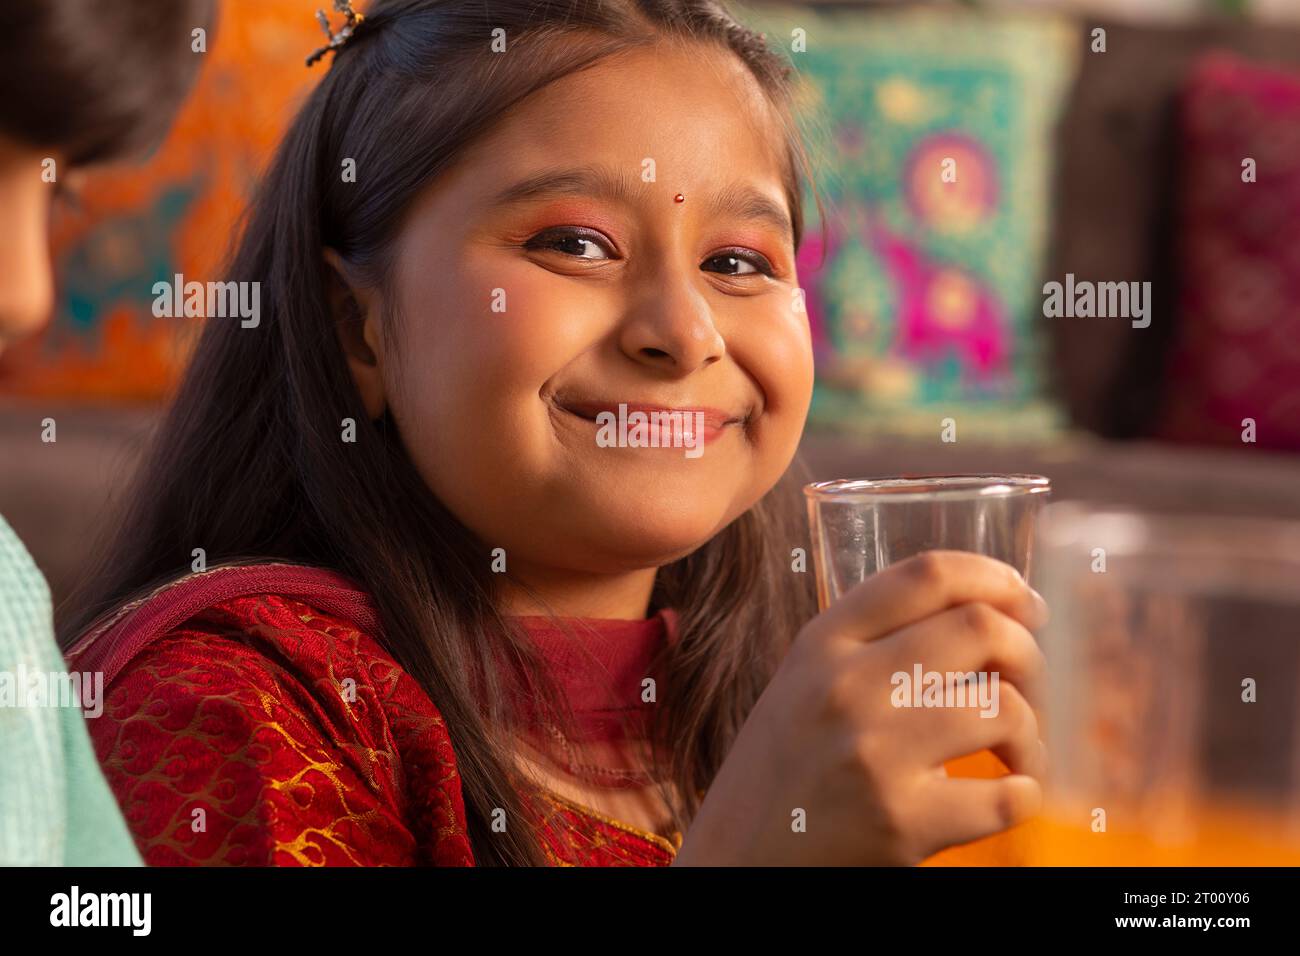 Ritratto ravvicinato di una ragazza sorridente che beve succo d'arancia Foto Stock